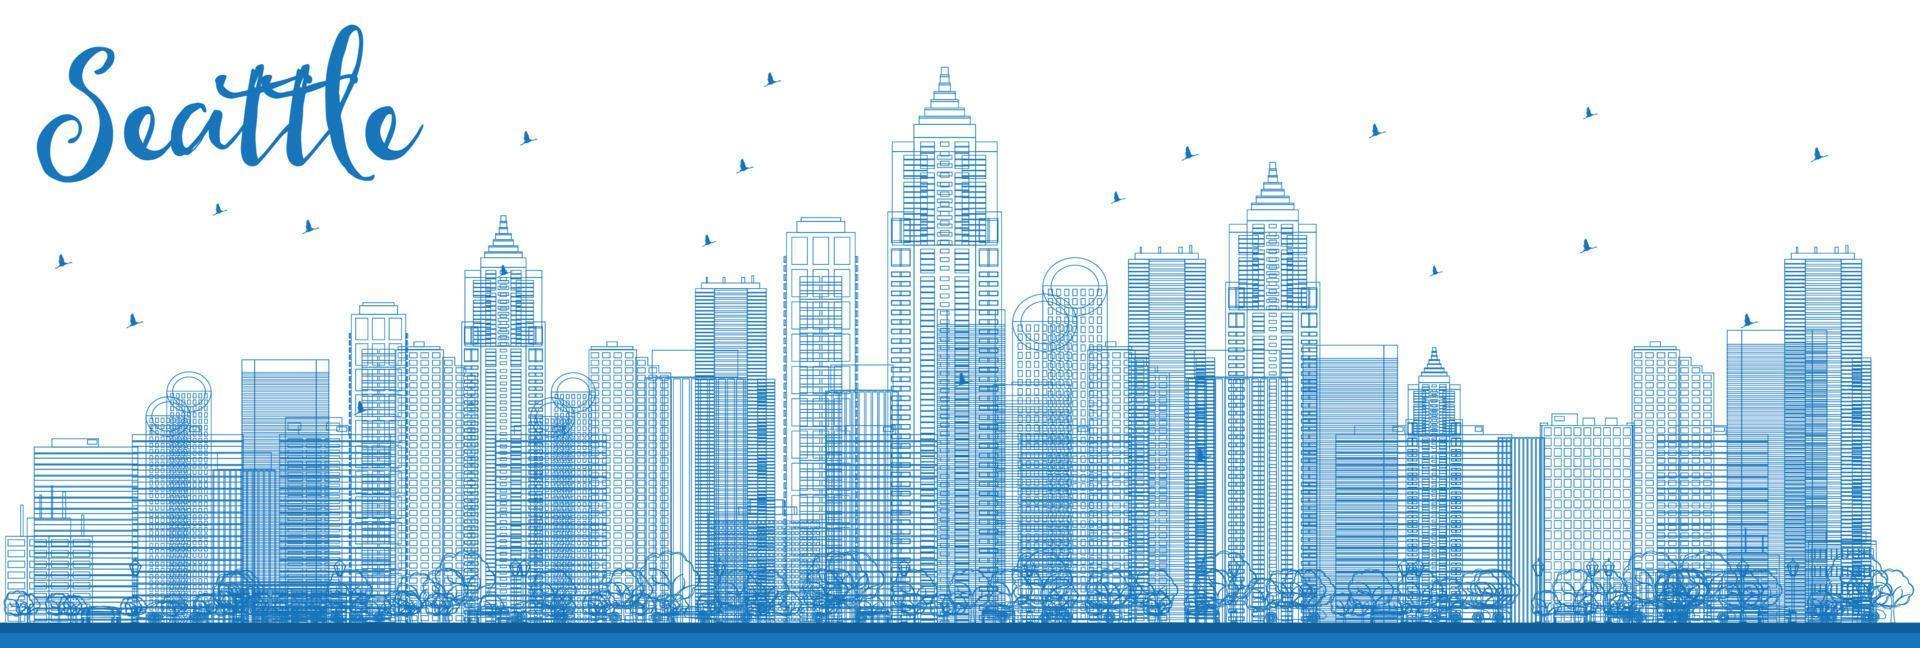 kontur seattle stadssilhuett med blå byggnader. vektor